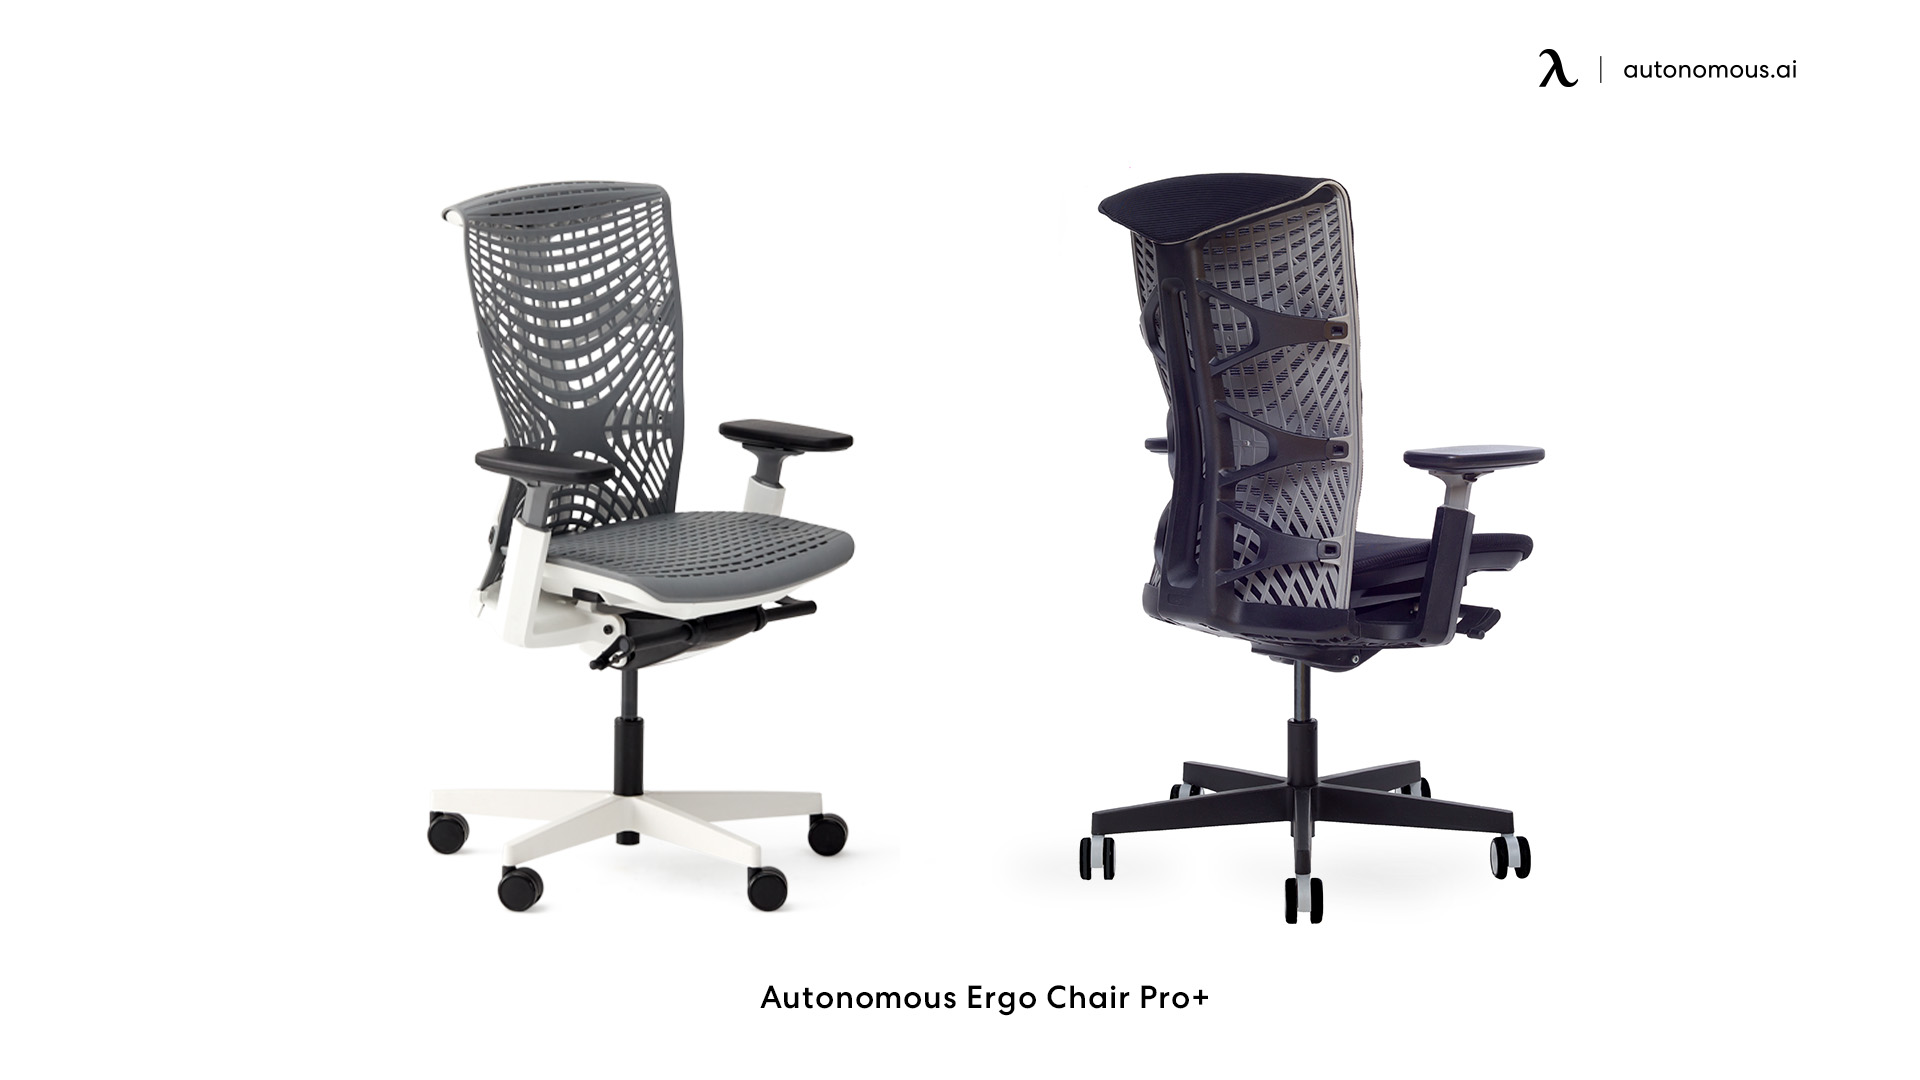 ErgoChair Pro+ small home office chair